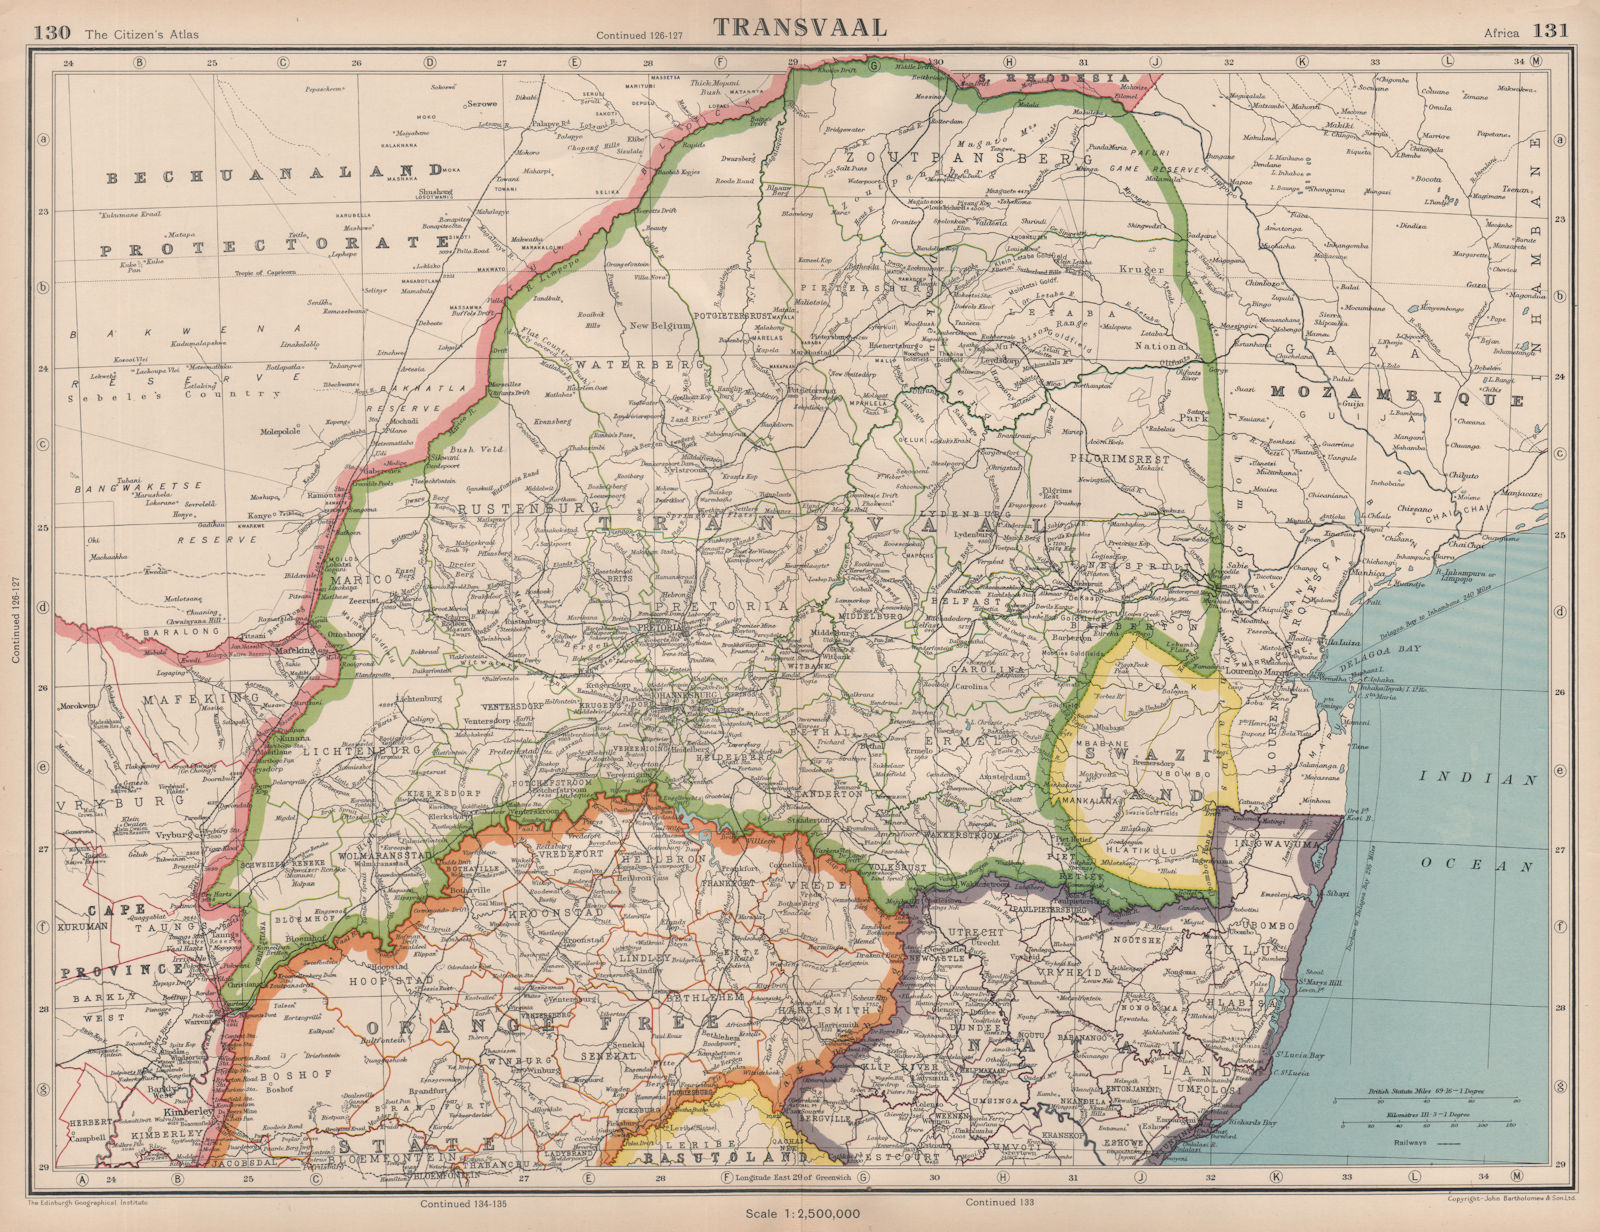 TRANSVAAL. South Africa. Railways. + Swaziland. BARTHOLOMEW 1944 old map